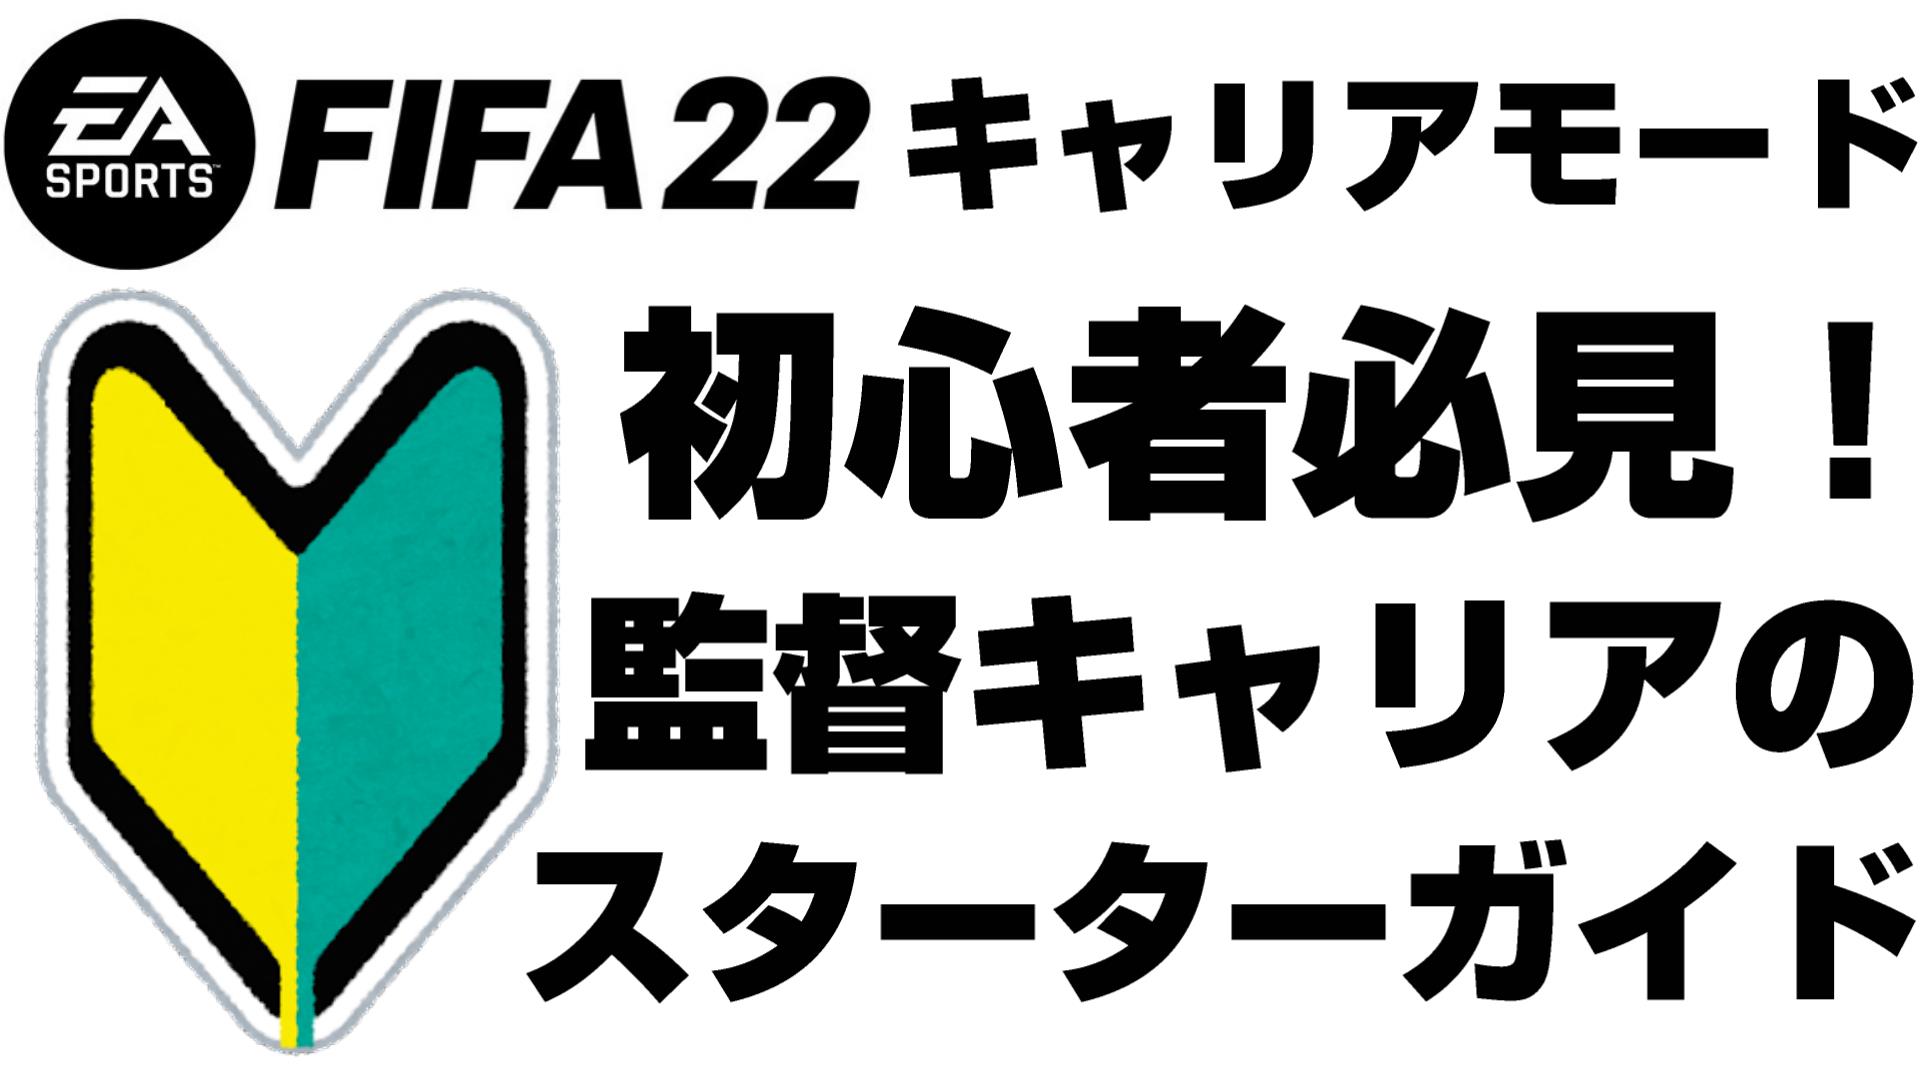 Fifa22 キャリアモード 監督キャリア 初心者向けスターターガイド Yasublog